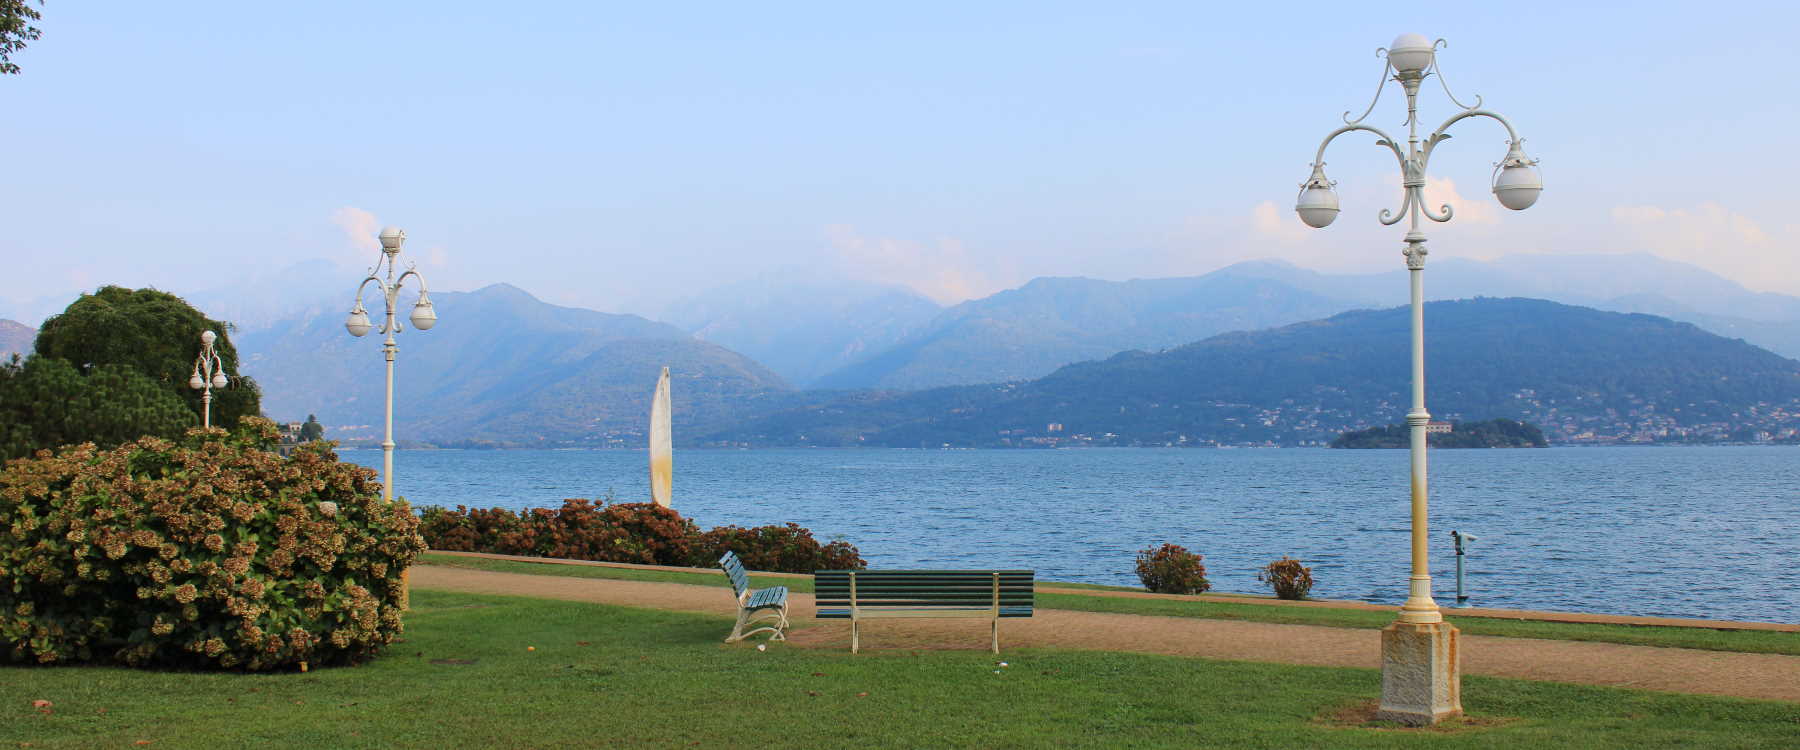 immagine-anteprima della fotografia del Lago Maggiore 2022 di Gabriele Romano